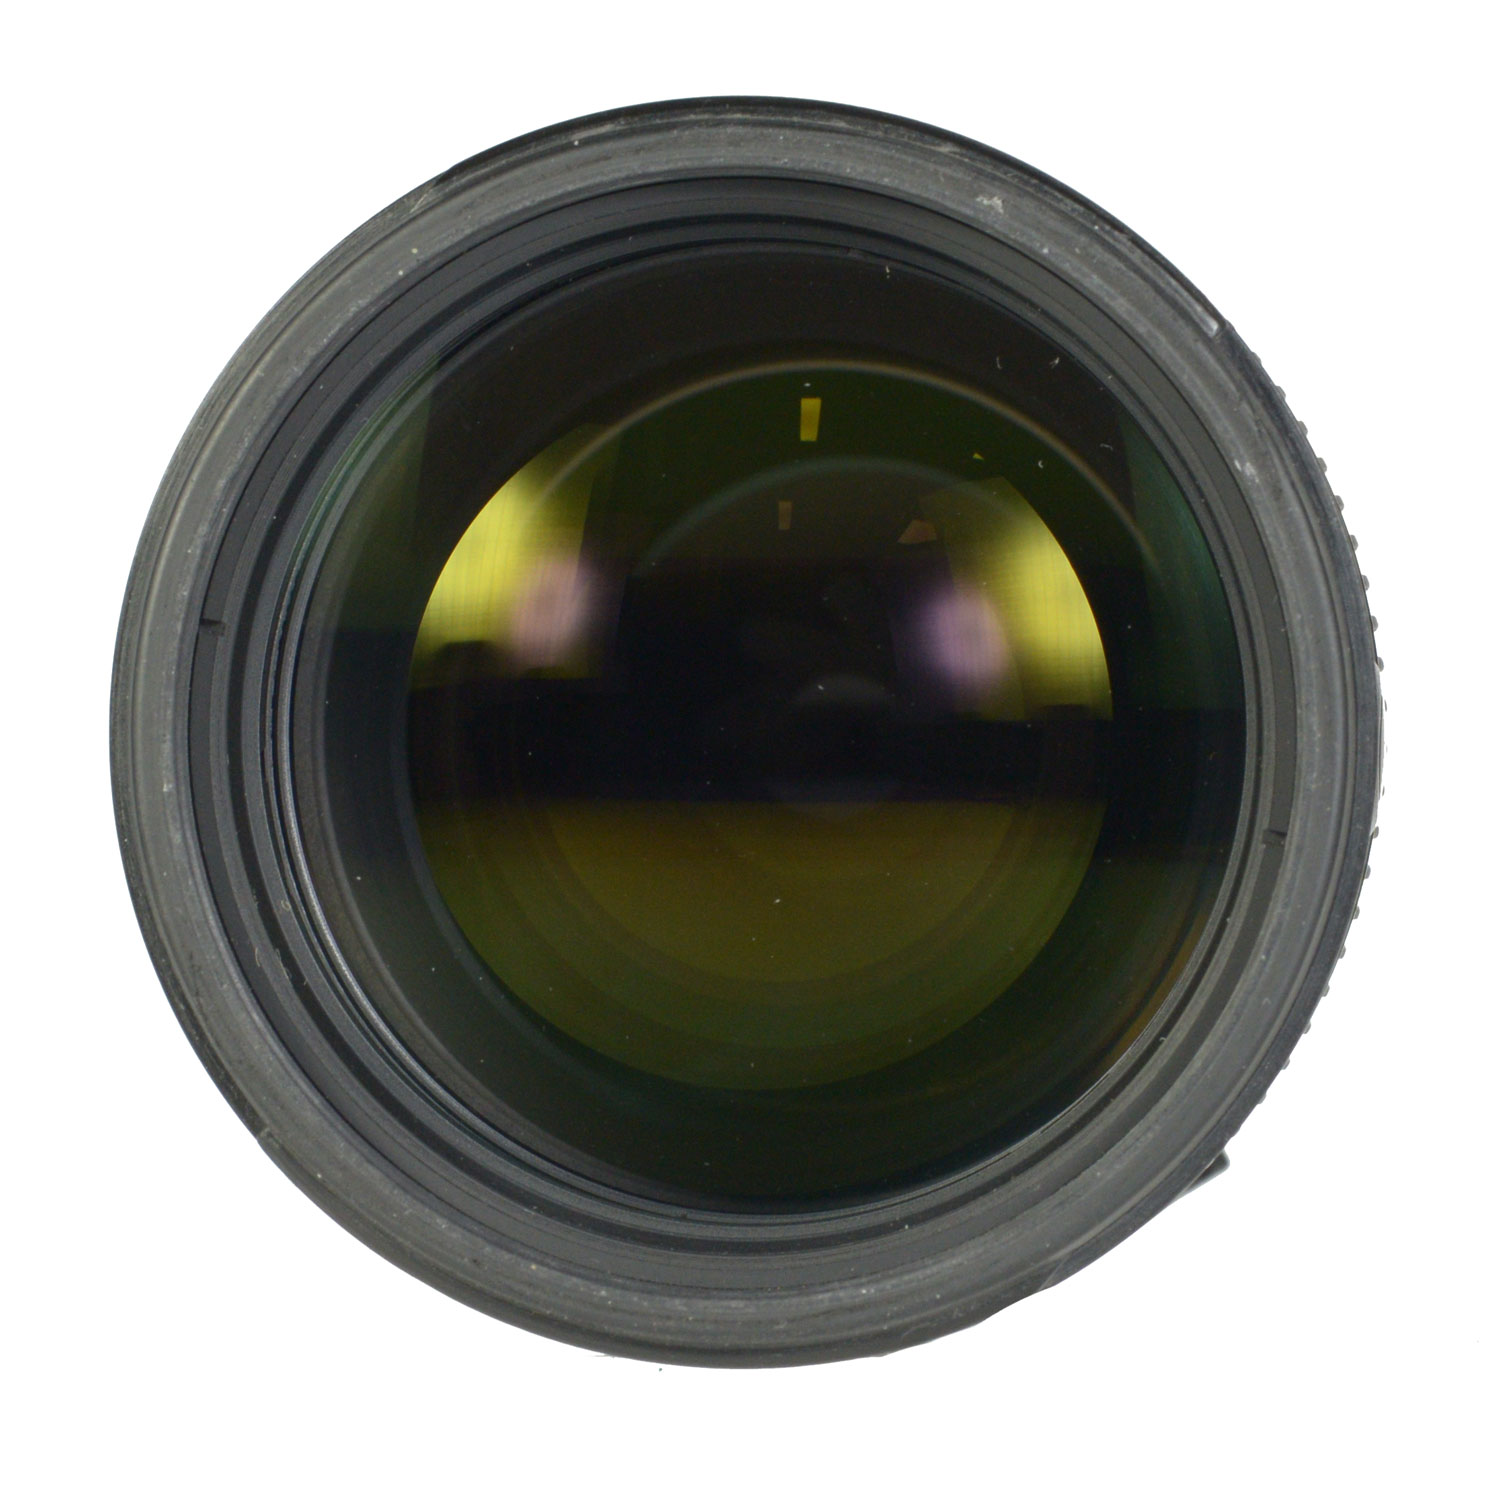 Nikon 70-200mm f/2.8G ED VR AF-S б/у